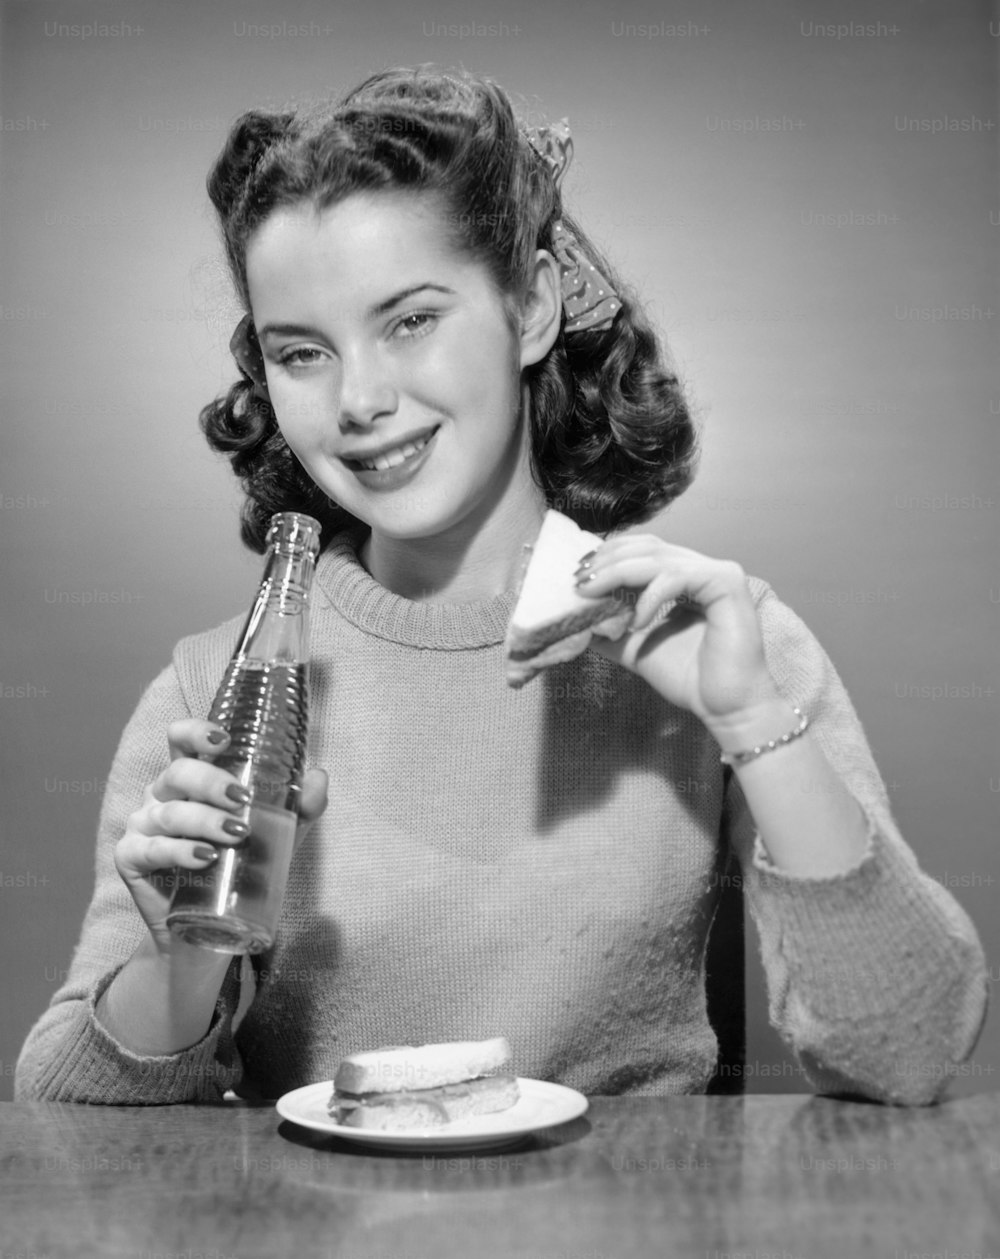 ESTADOS UNIDOS - CIRCA 1950s: Adolescente tomando refrescos y sándwiches.